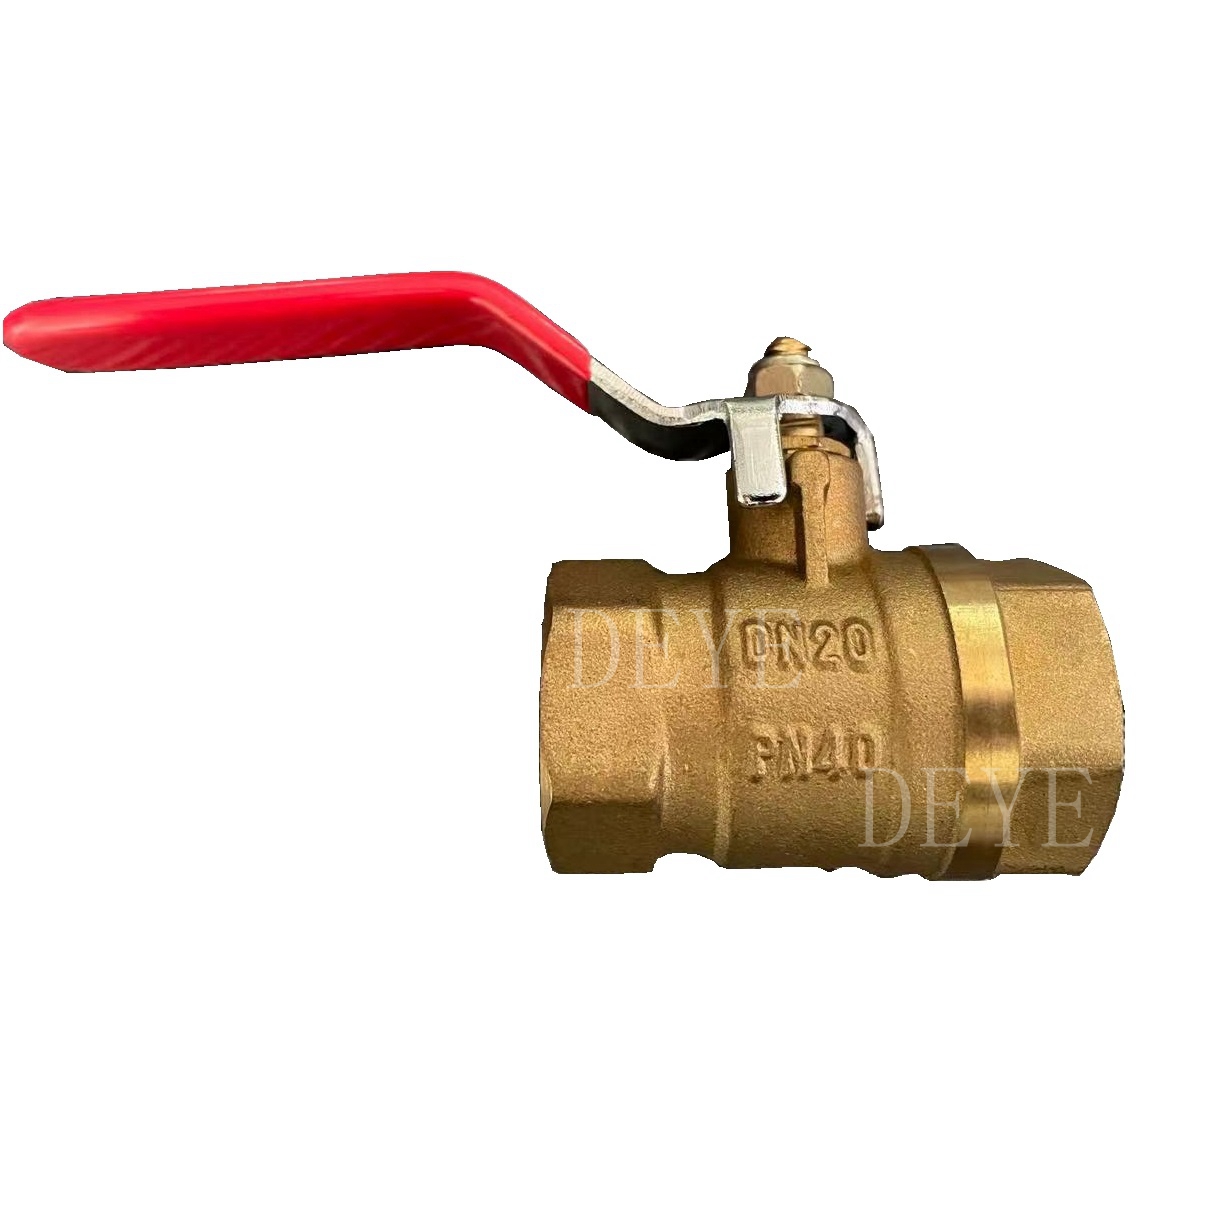 DIN PN40 brass ball valve 